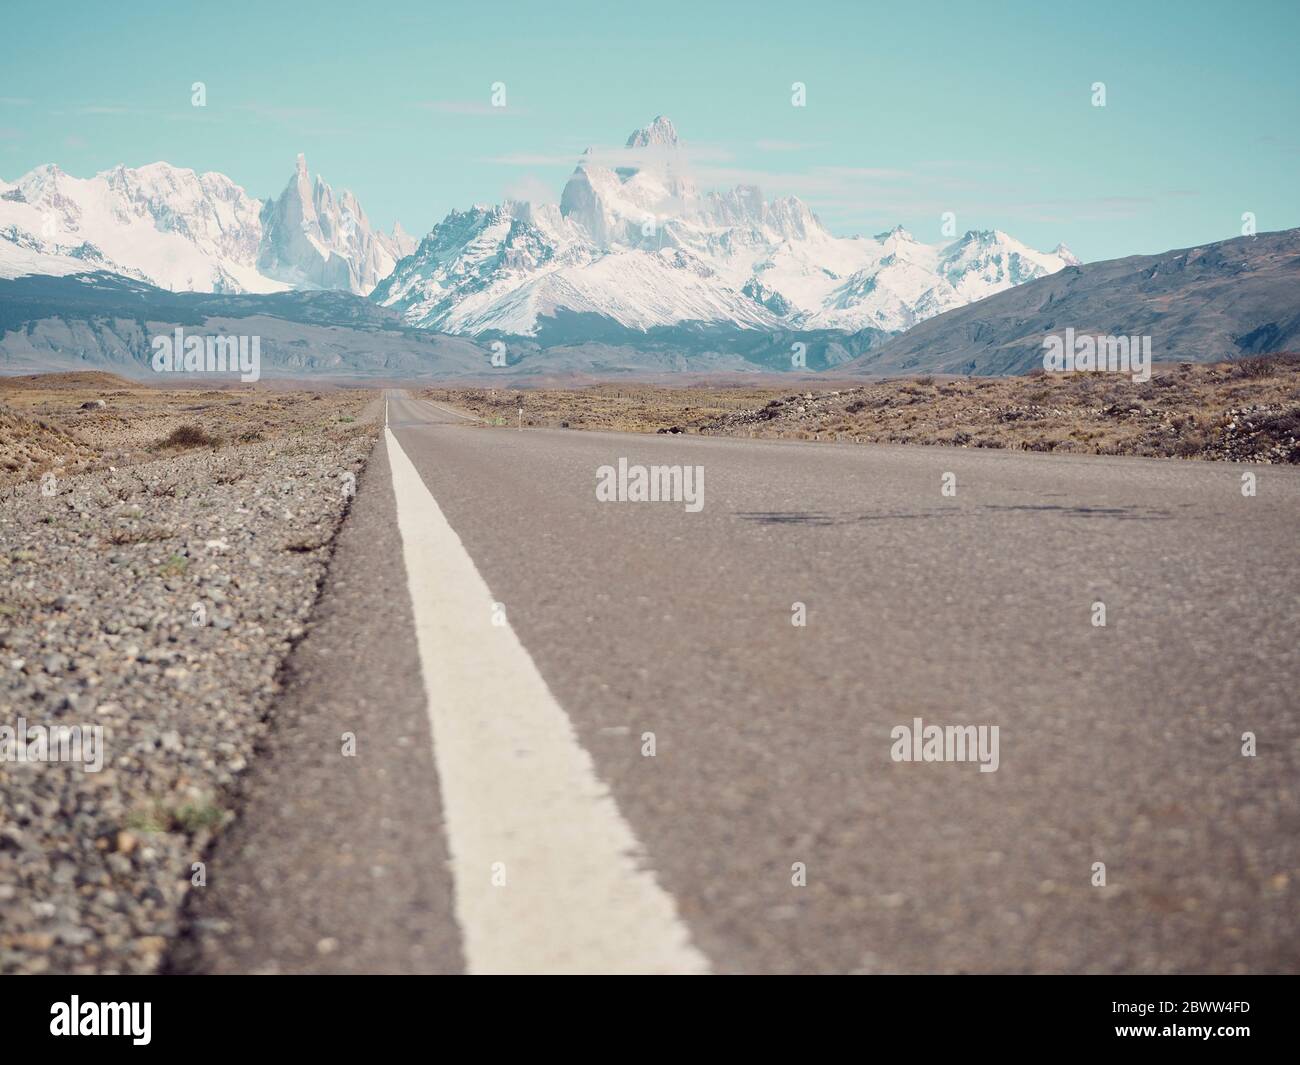 Surface level view of road to El Chalten and Parque Nacional Los Glaciares, El Chalten, Argentina Stock Photo